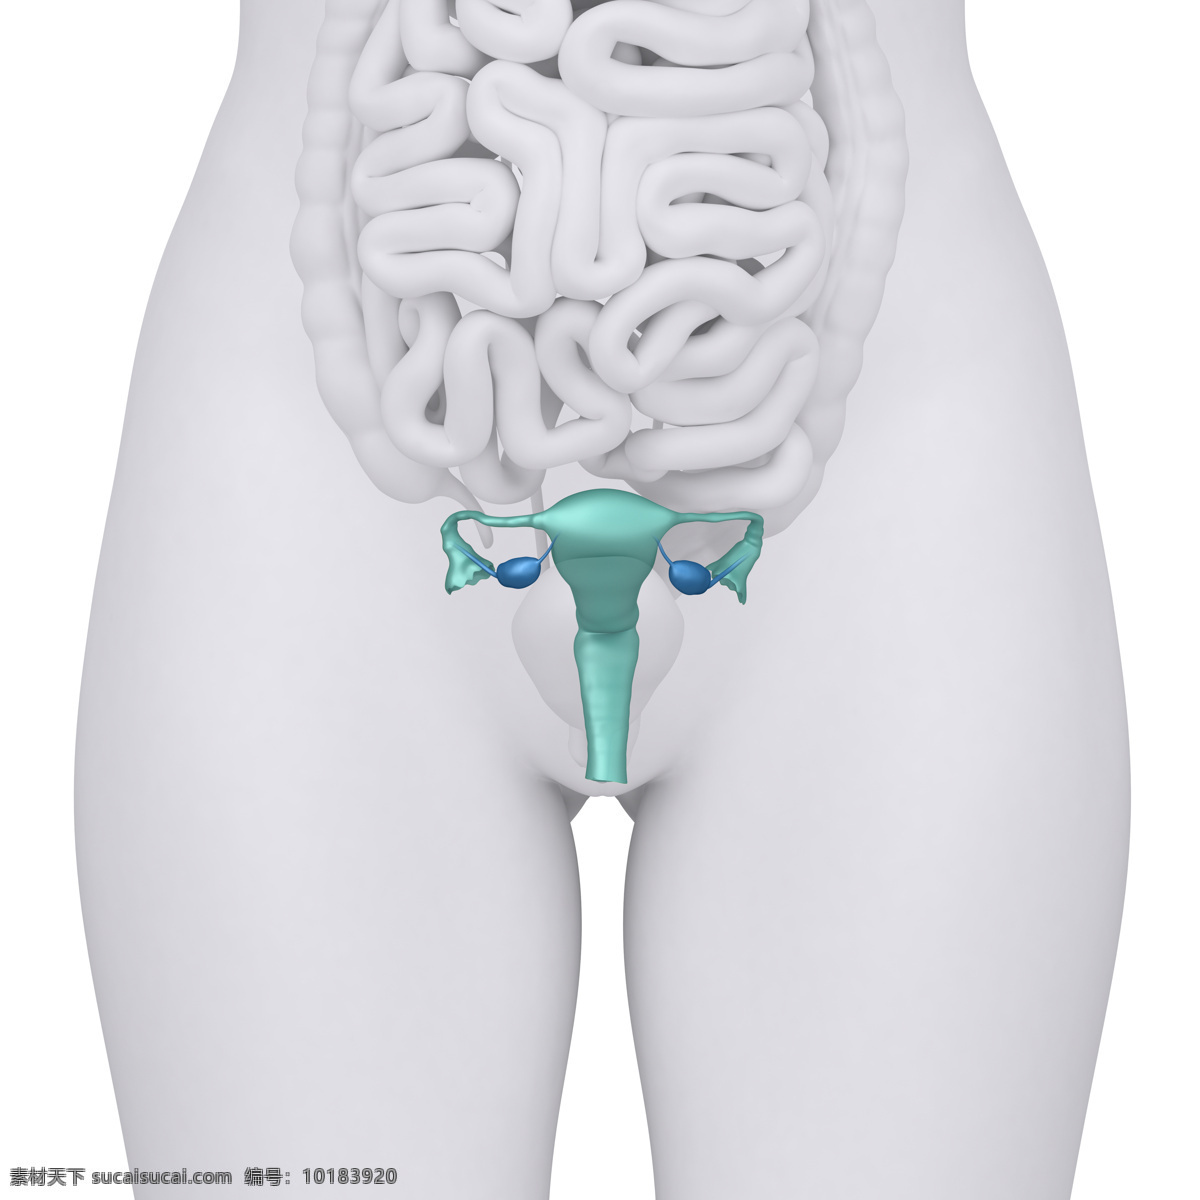 女性 卵巢 肠子 器官 女性器官 肠子器官 卵巢器官 子宫 人体器官 医疗科学 医学 人体器官图 人物图片